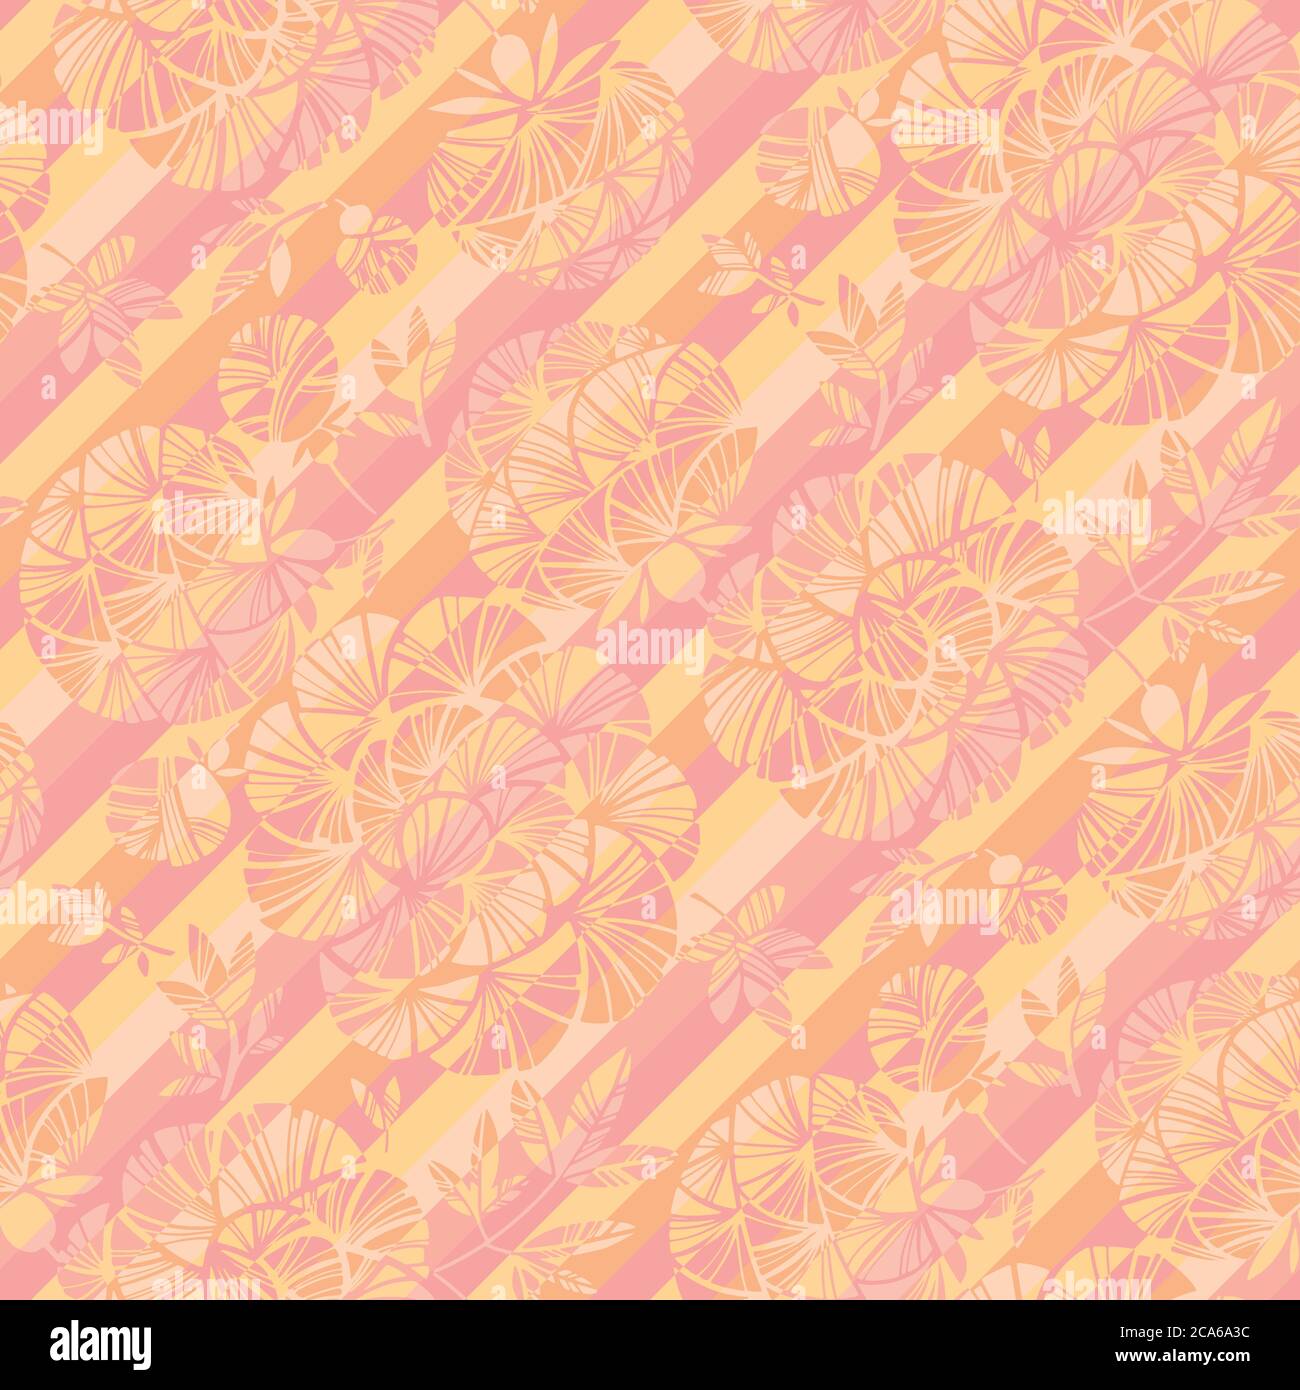 Romantische blass Farbe floral nahtlose Muster für Hintergrund, Stoff, Textil, Wrap, Oberfläche, Web-und Print-Design. Frühling abstrakte Blume Rapport. Stock Vektor